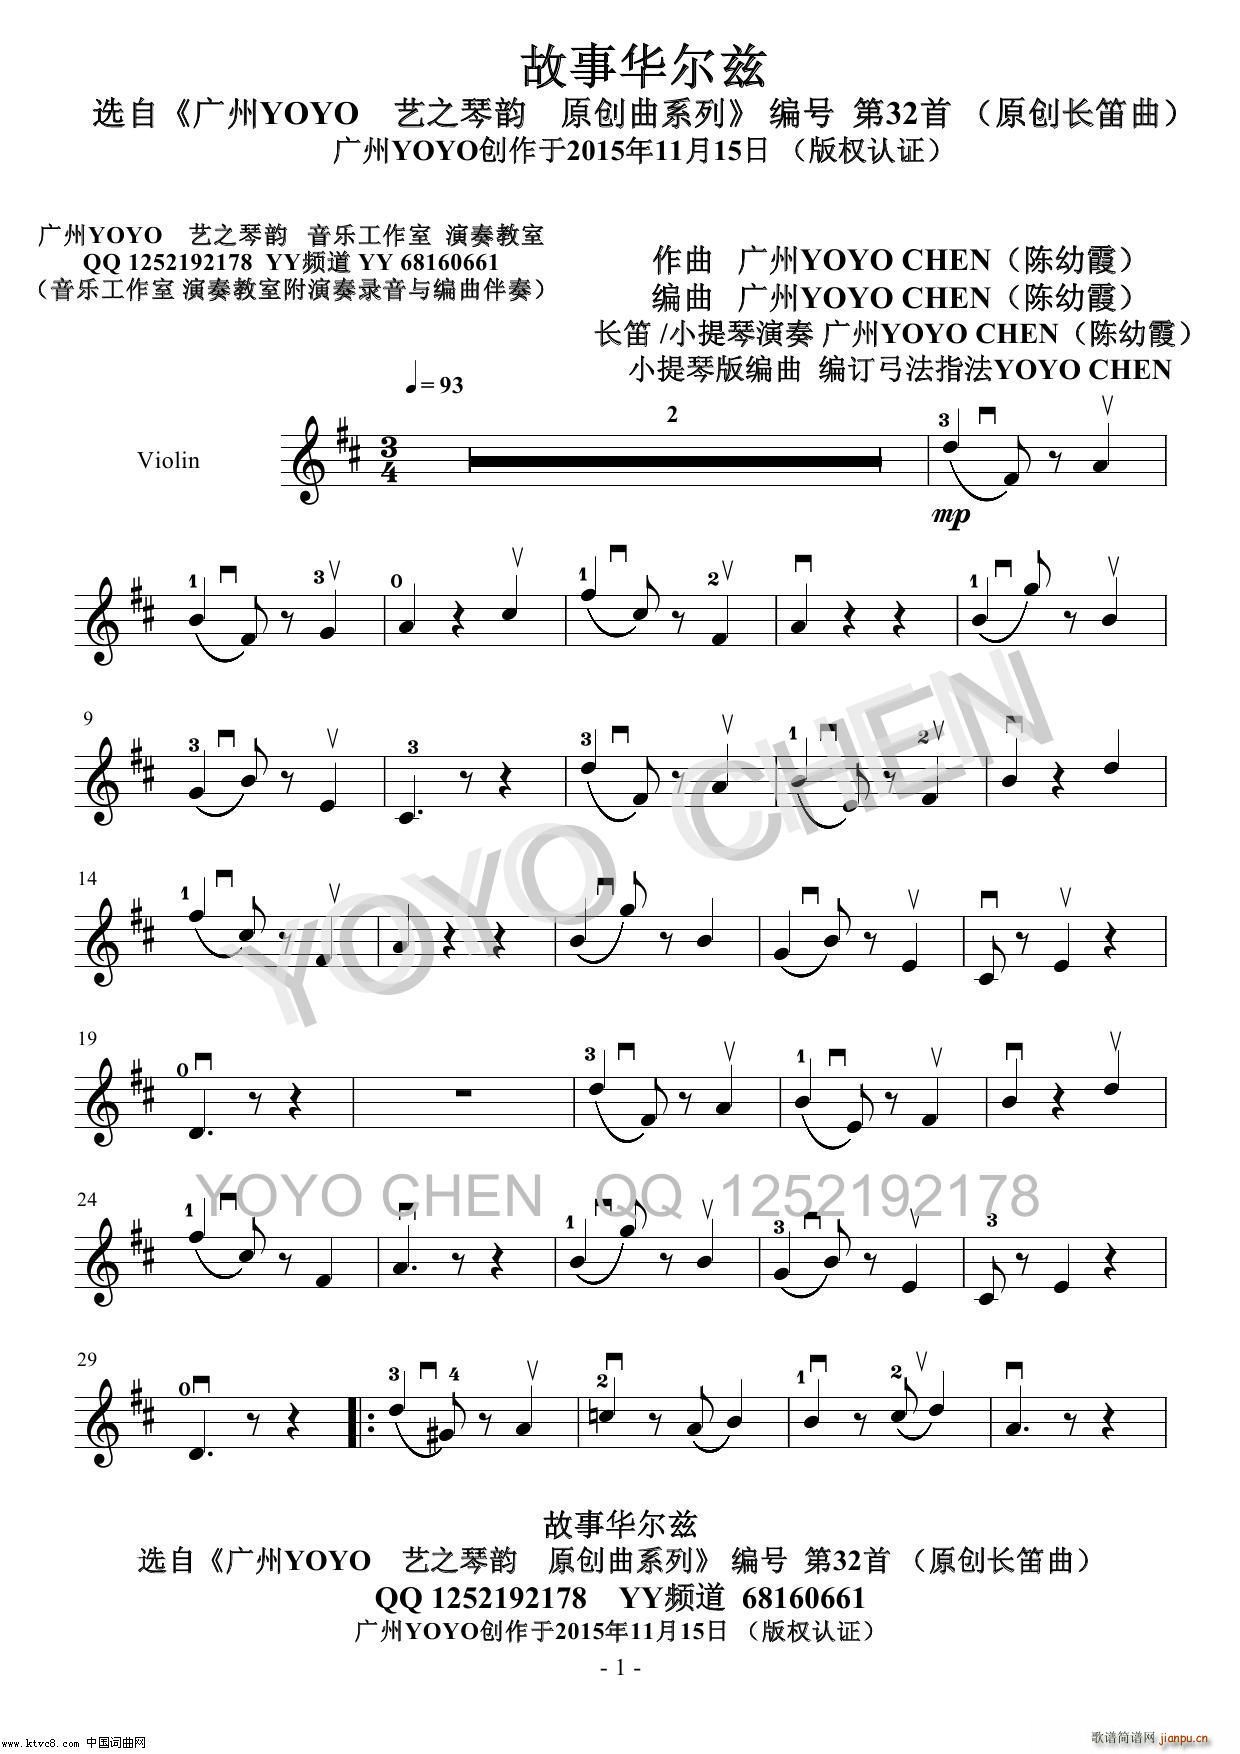 华尔兹 广州YOYO原创长笛曲小提琴版(小提琴谱)1